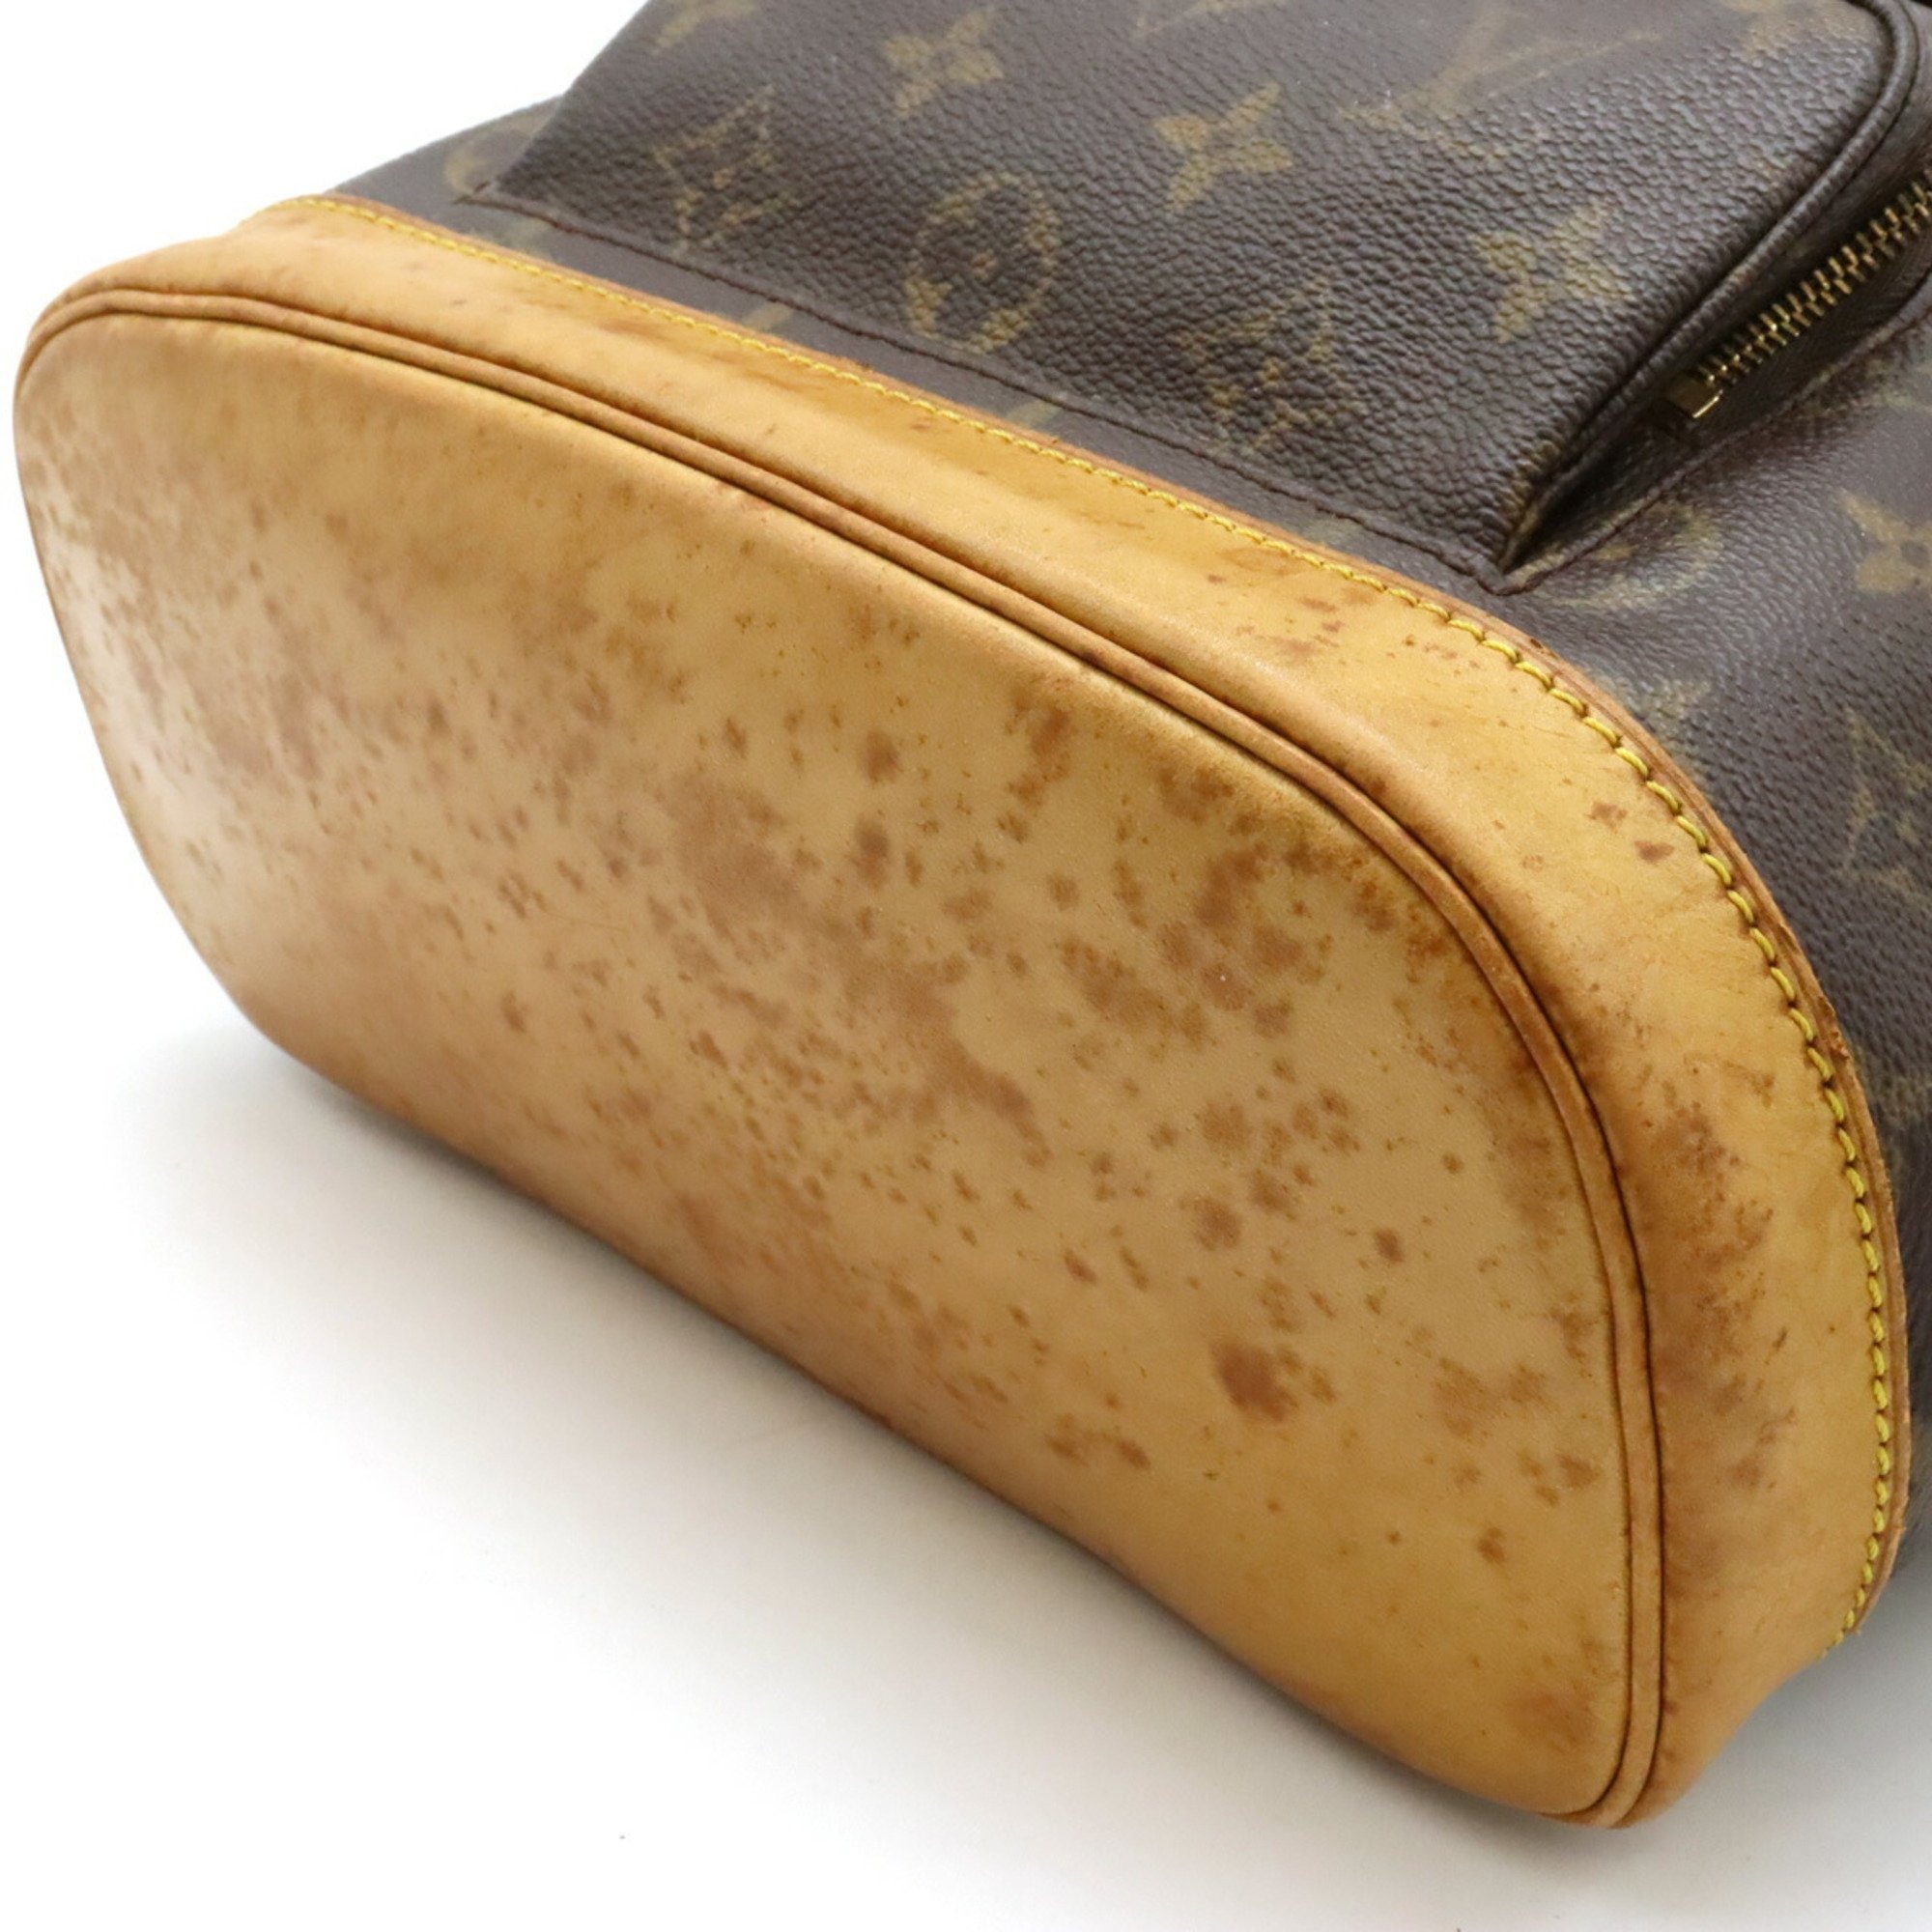 LOUIS VUITTON Louis Vuitton Monogram Montsouris MM Rucksack Backpack Shoulder Bag M51136